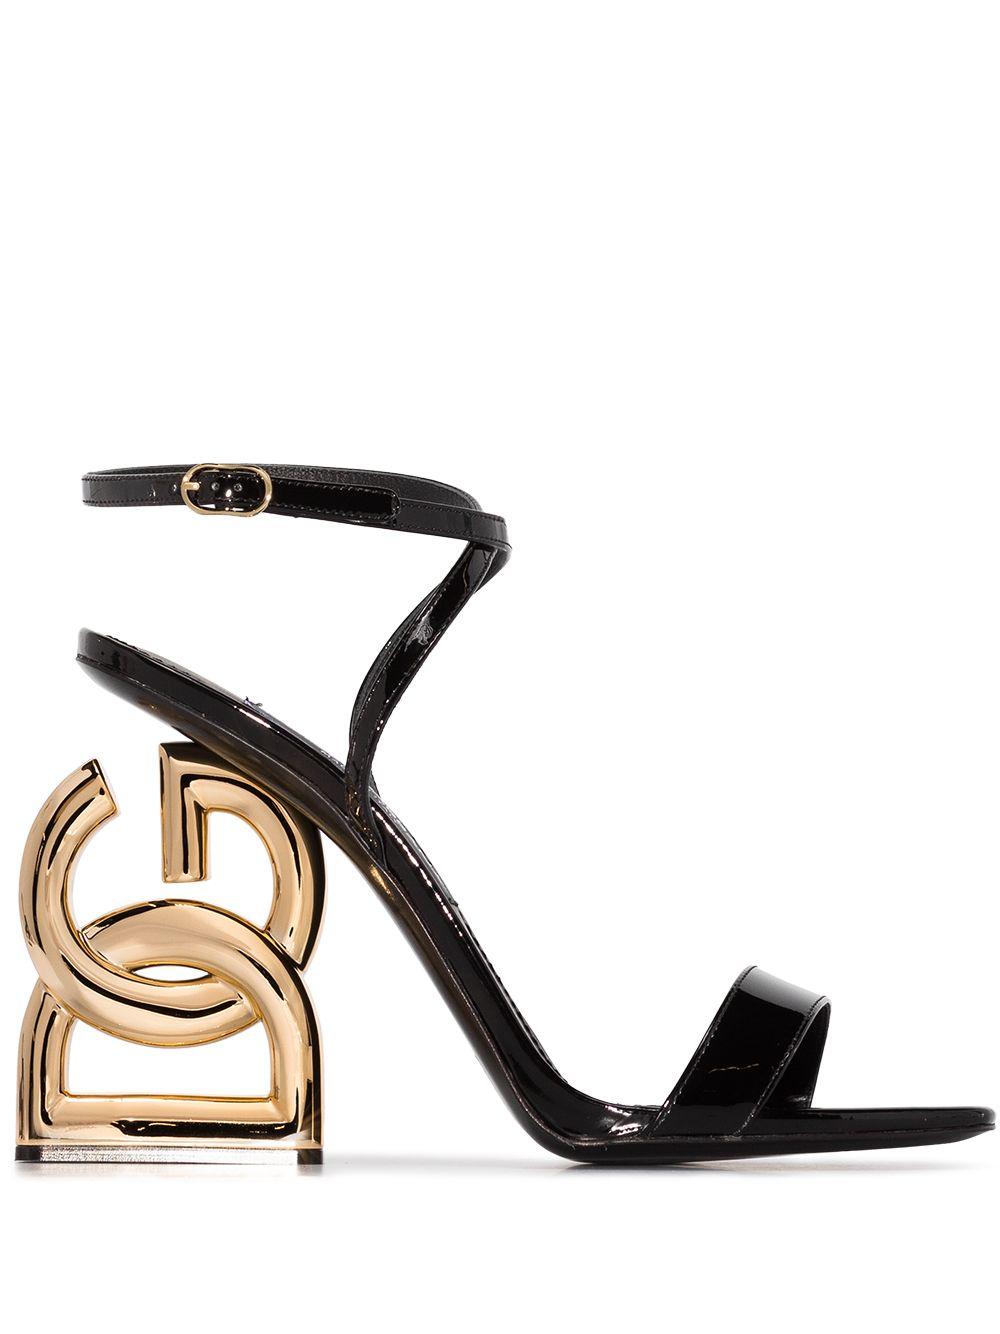 Dolce & Gabbana Dg Pop Keira Sandals in Black | Lyst